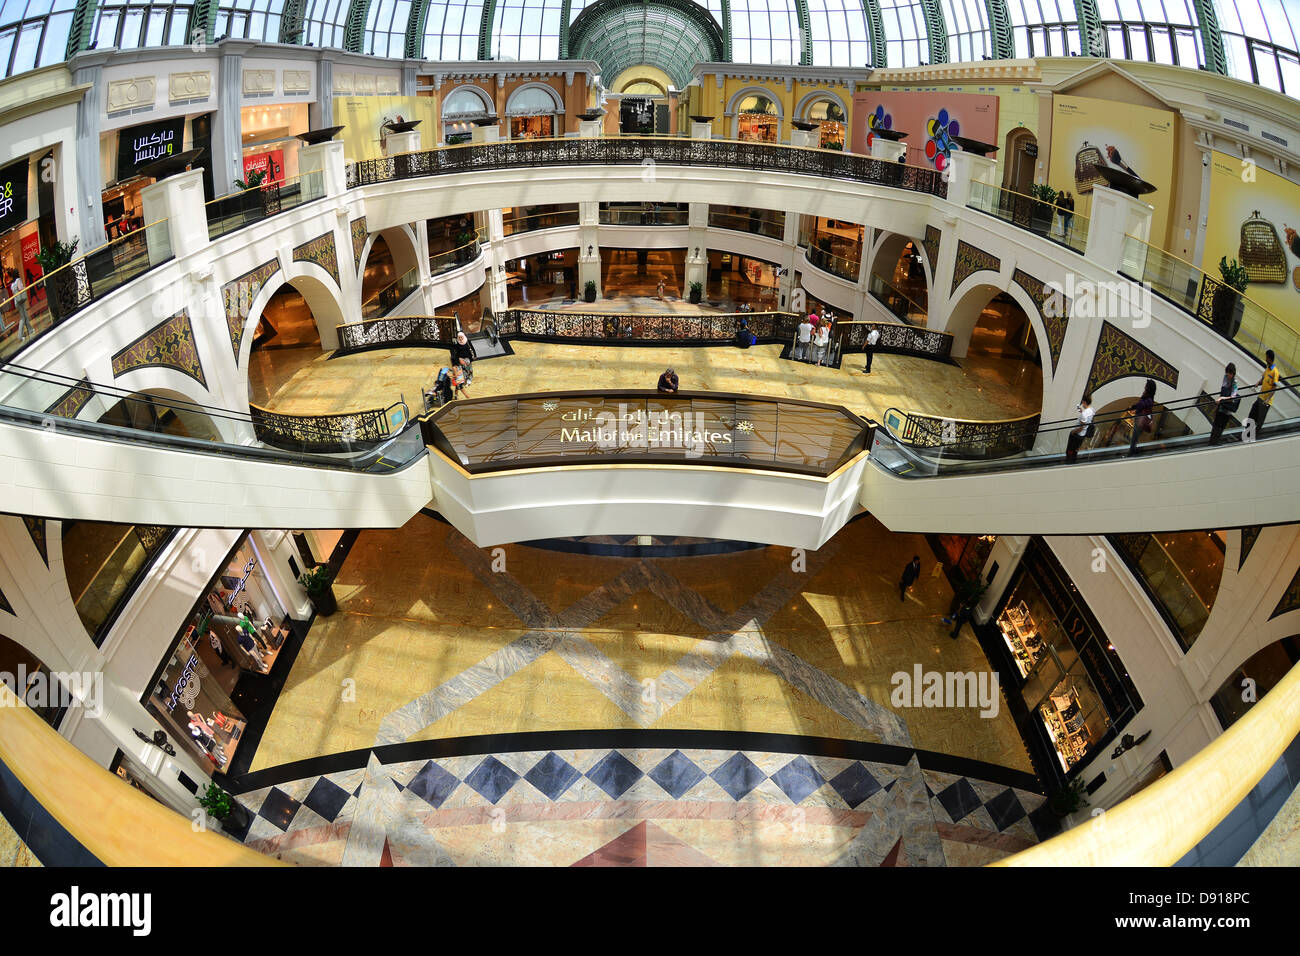 Mall of the Emirates Interieur von der Mall of the Emirates, Dubai, Vereinigte Arabische Emirate Stockfoto